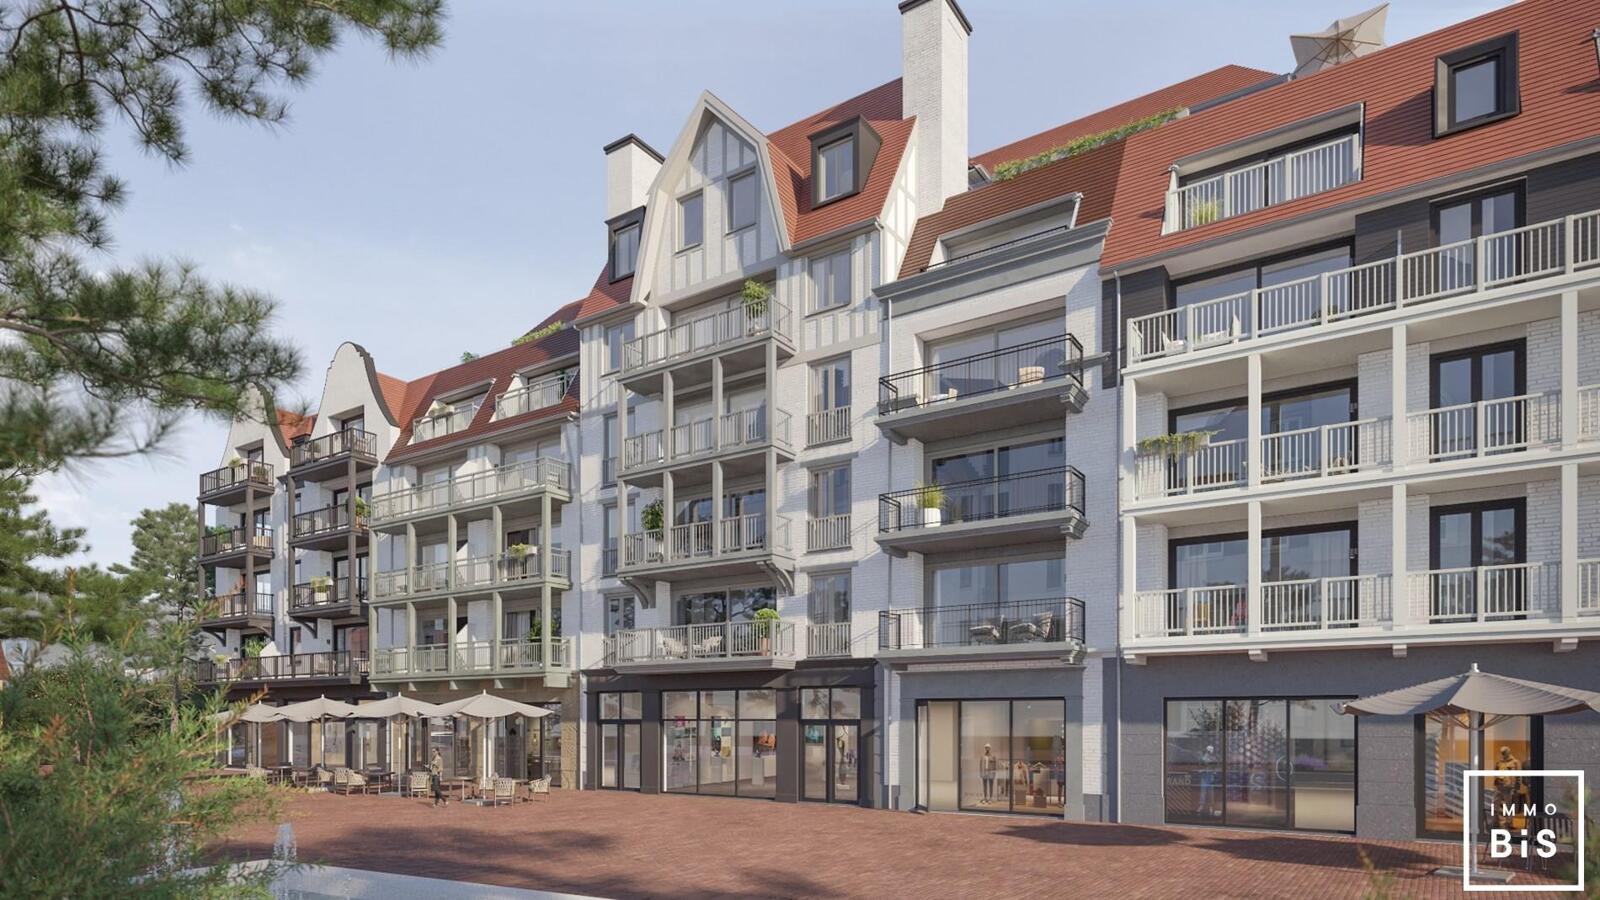 " Appartement villa moderne avec terrasse sur la Digue à Cadzand - Résidence Duinhof-Noord " 2